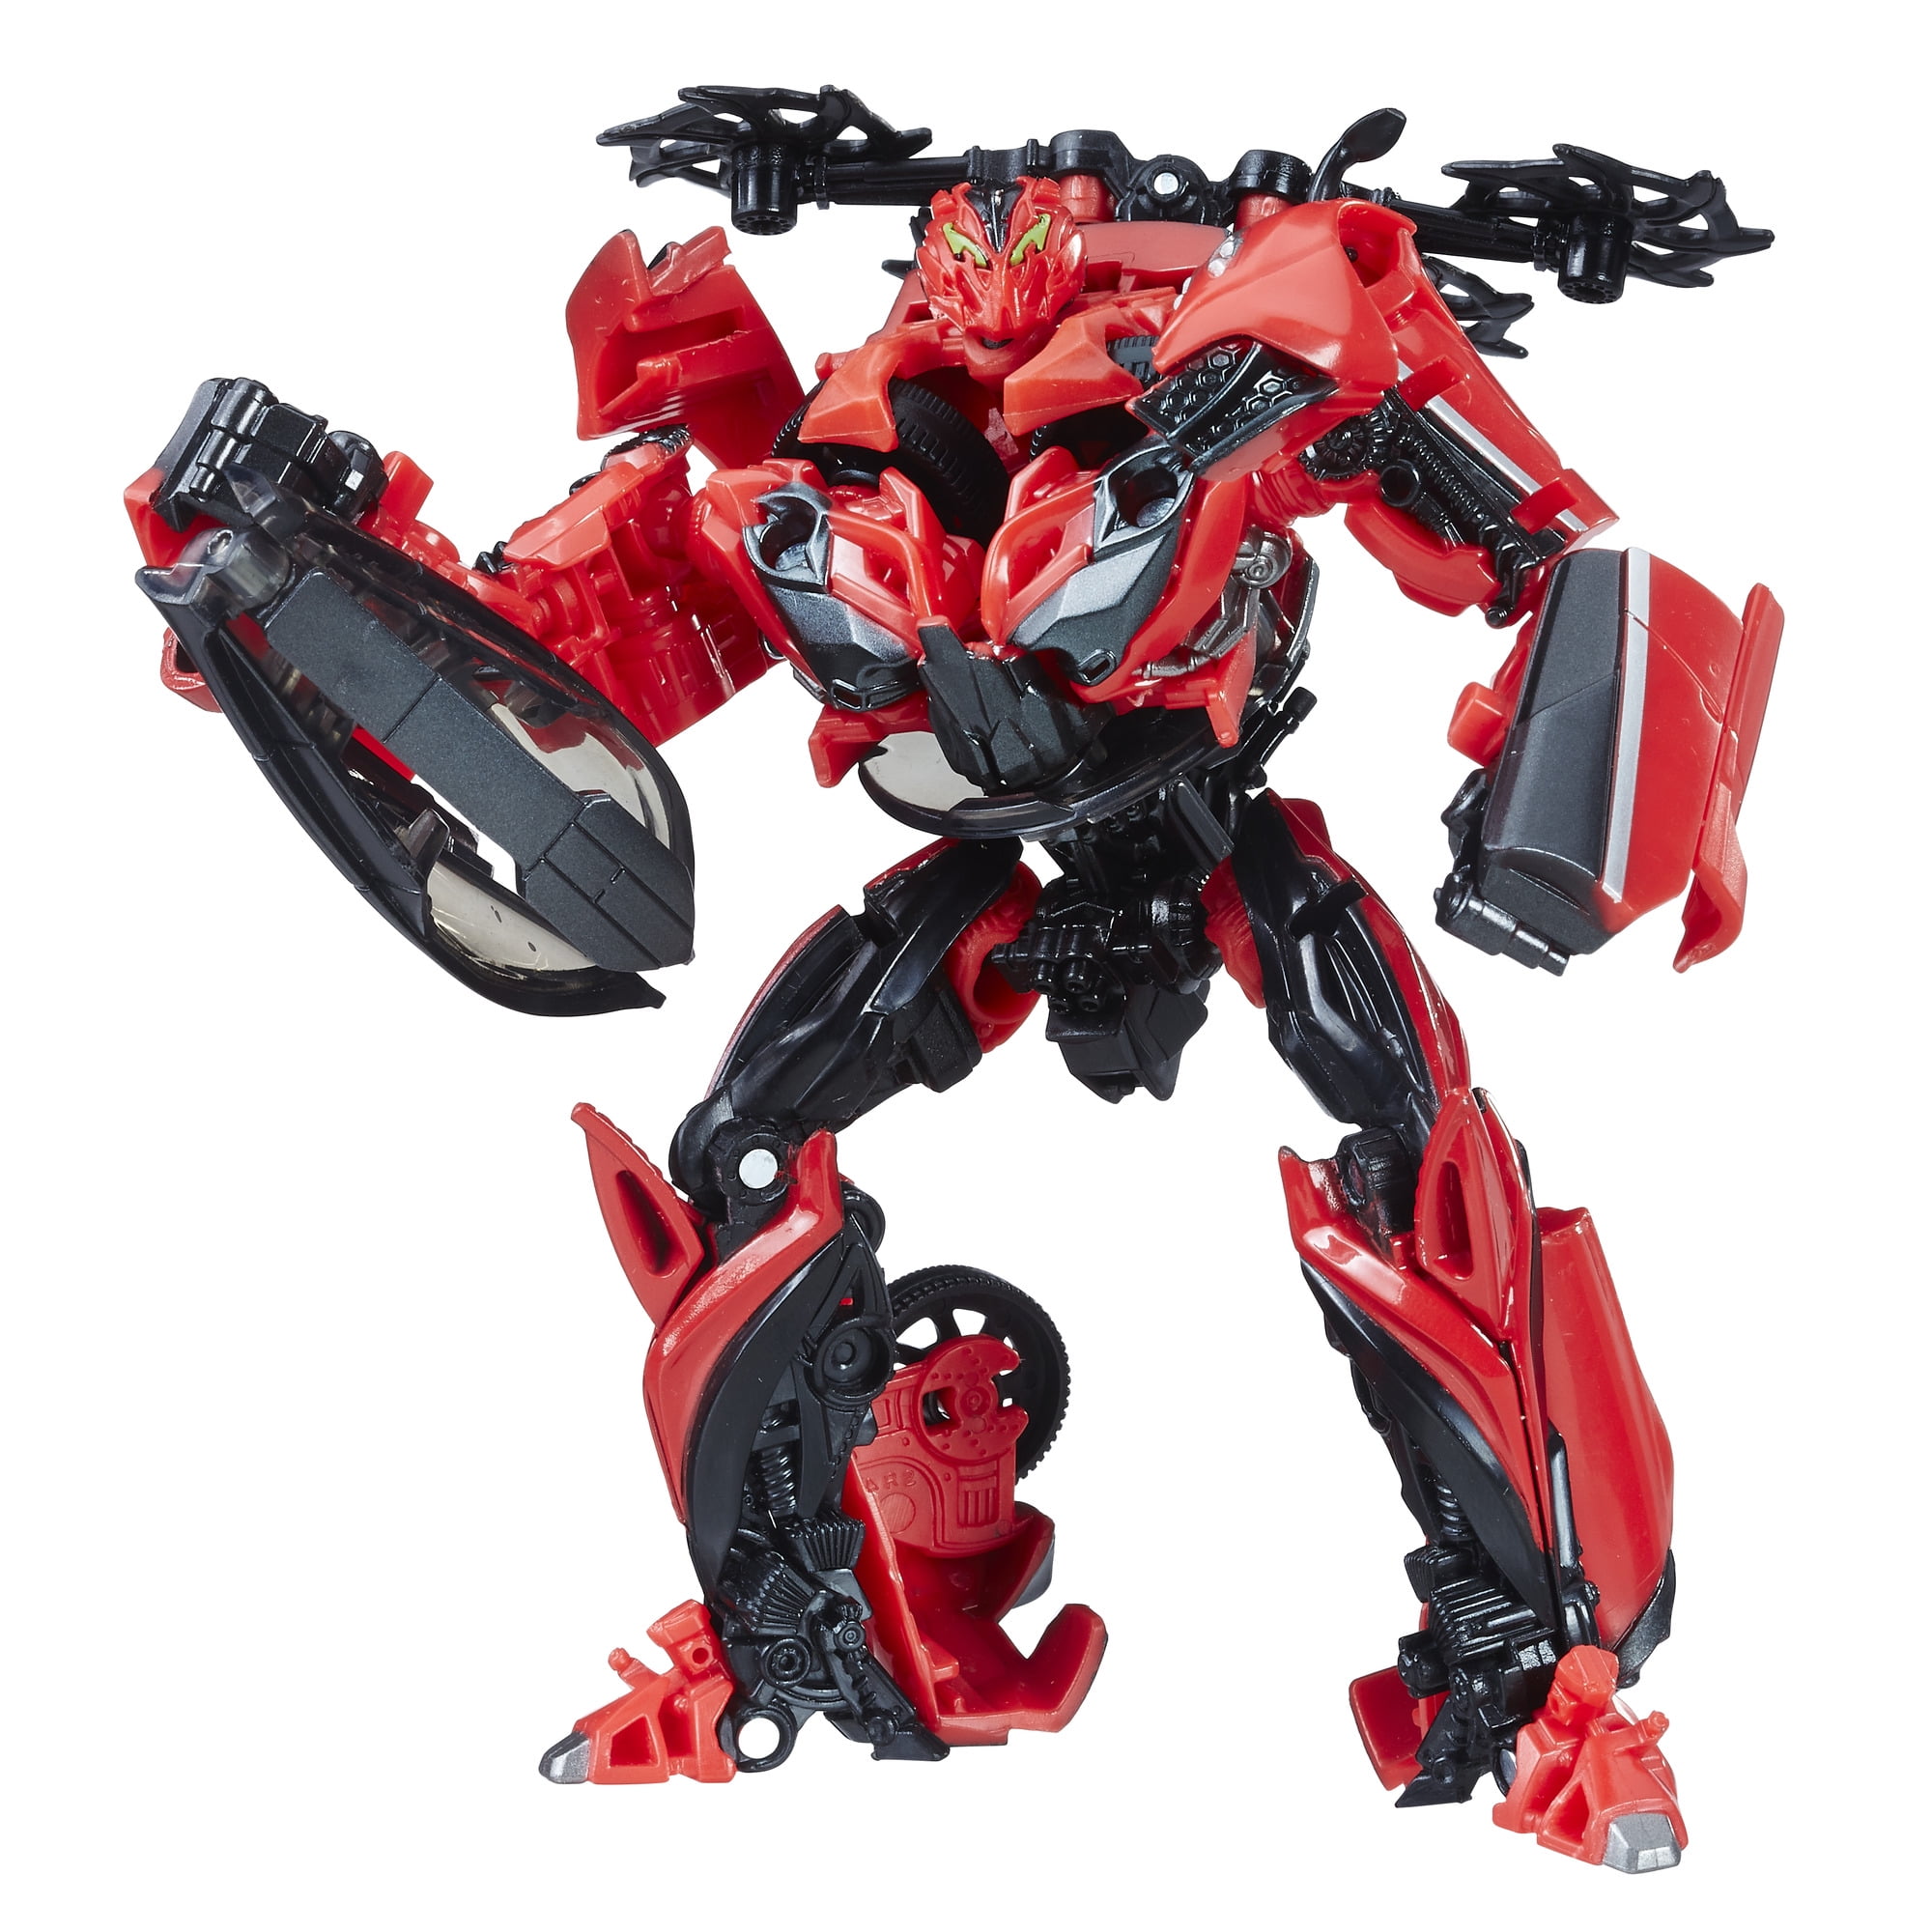 Transformers Car Autobots Vehicle Decepticons Robots 12 PCS Action Figure Toys 